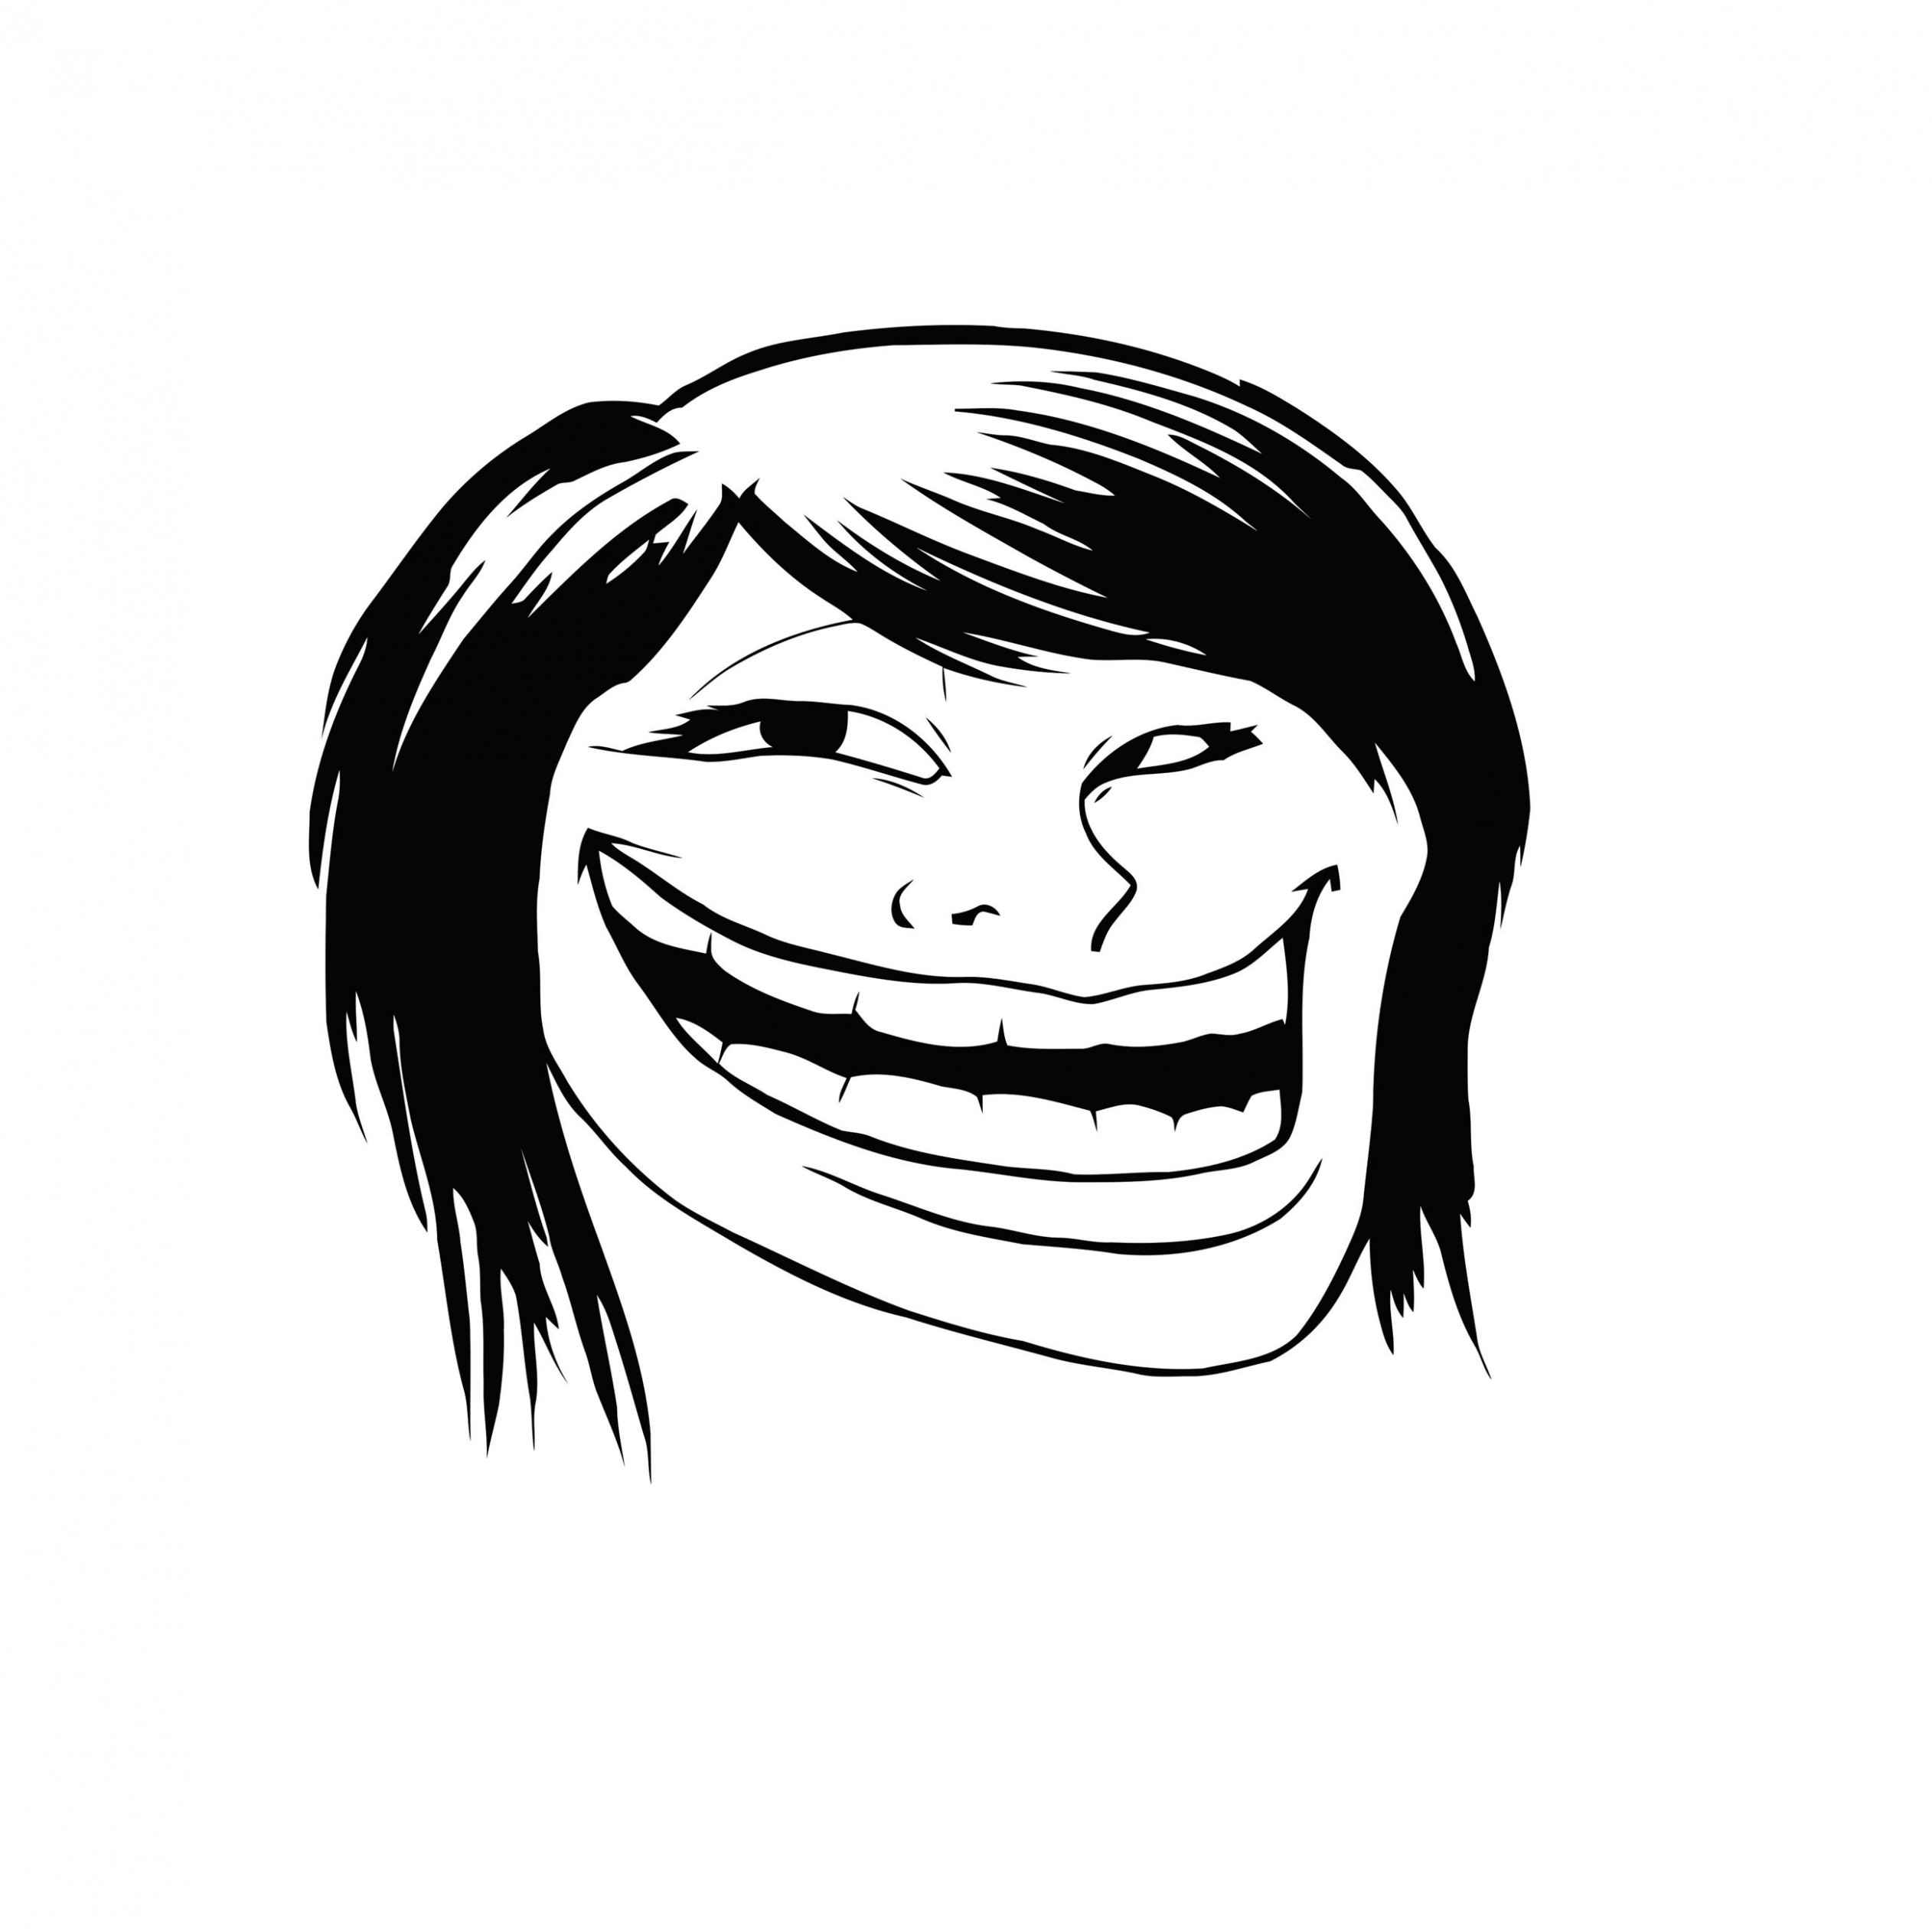 Female Troll Face Meme Wallpaper for Apple iPad 4